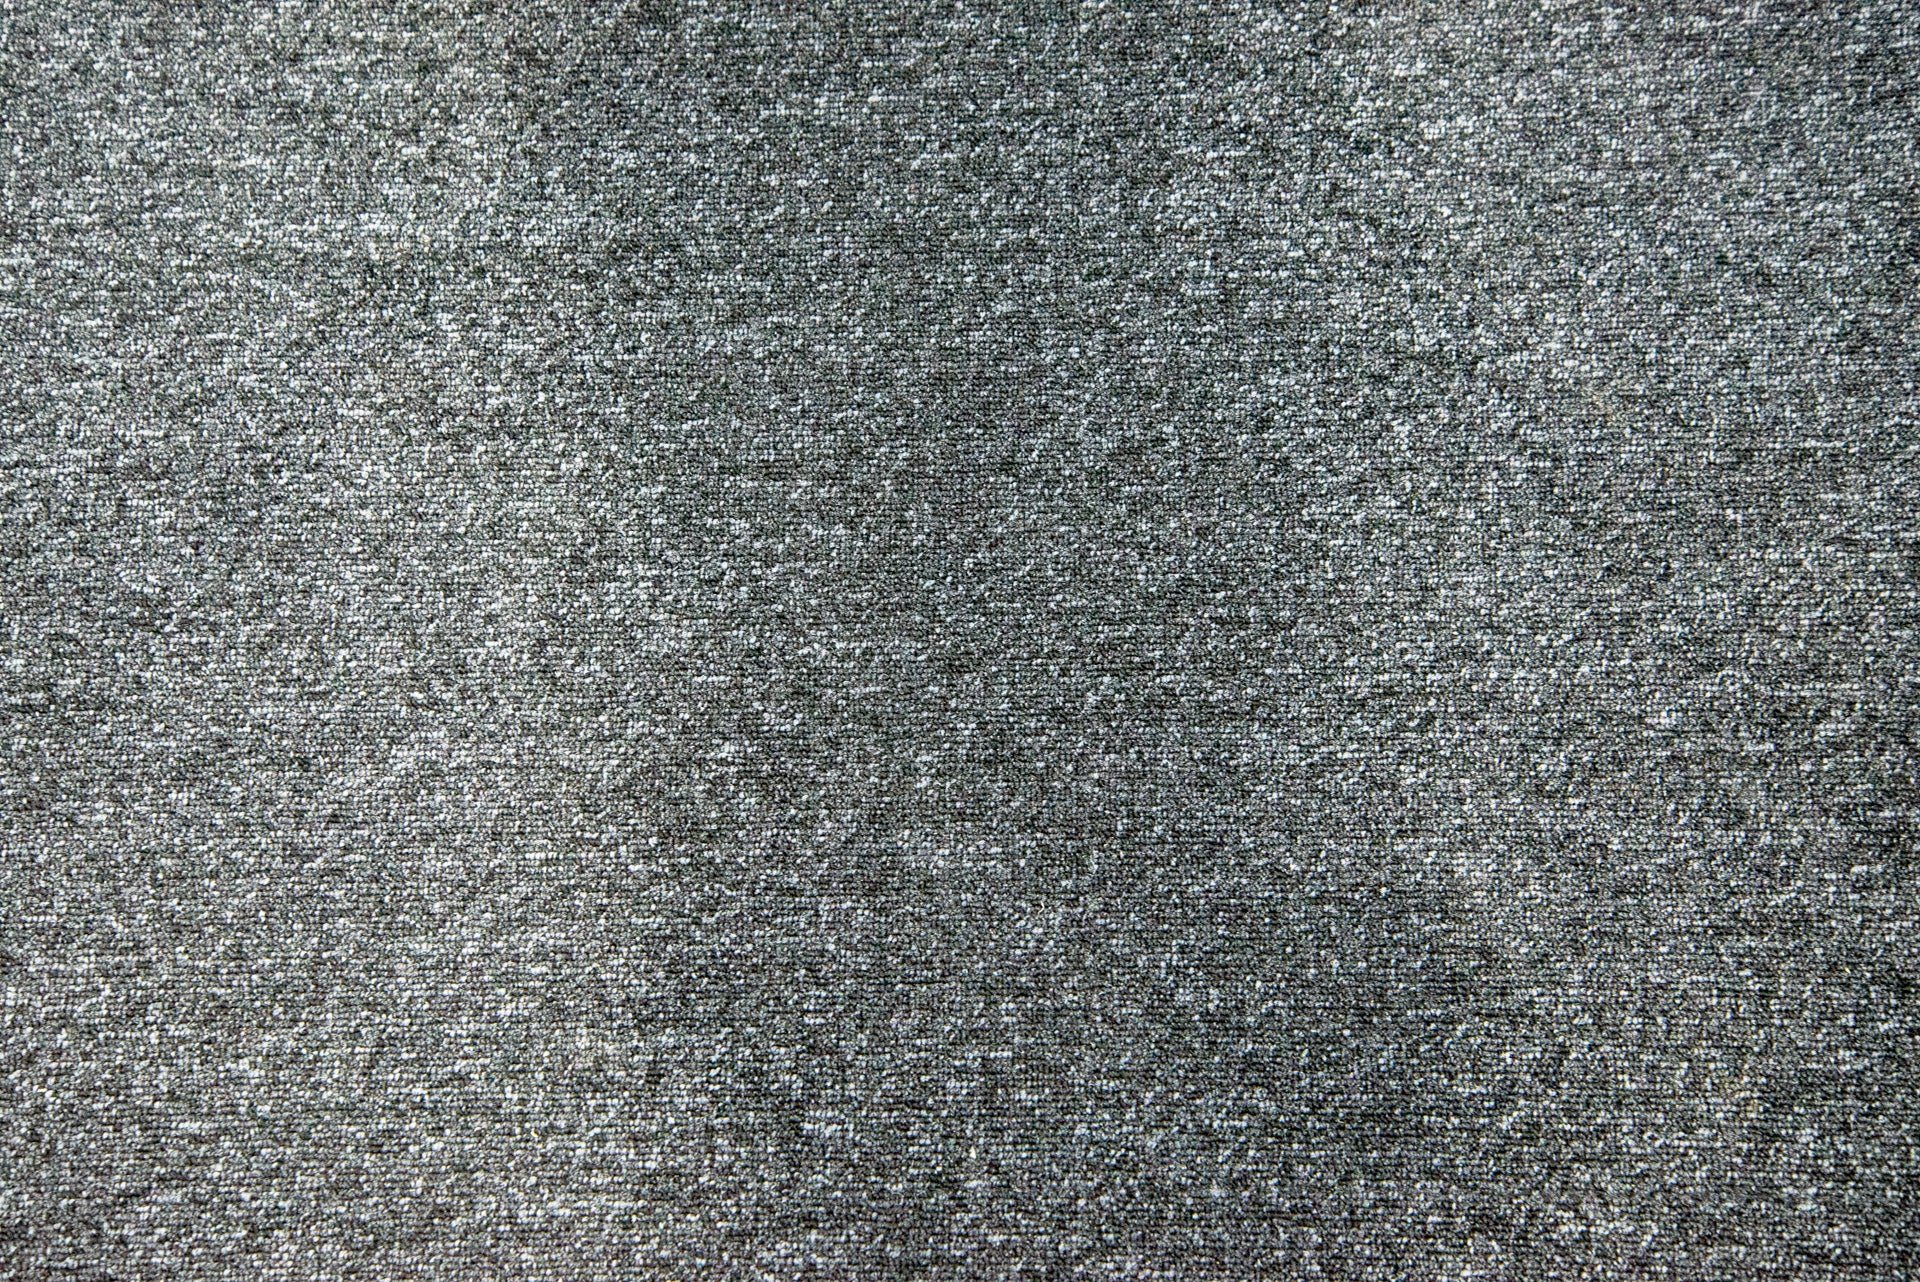 Clean carpet tile